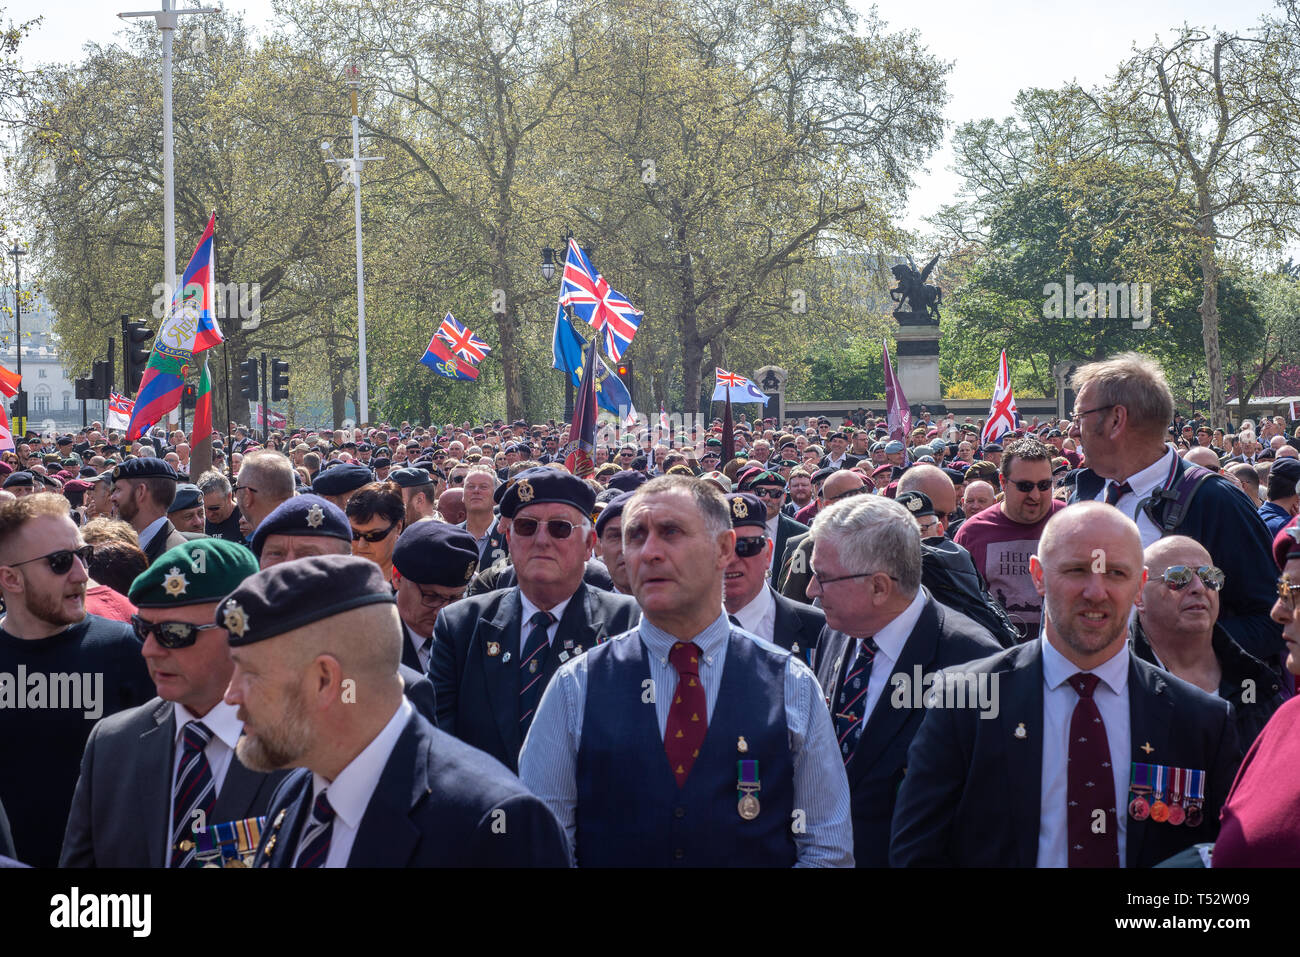 Justicia para los veteranos de Irlanda del Norte de Londres el Viernes Santo de marzo 2019 Foto de stock